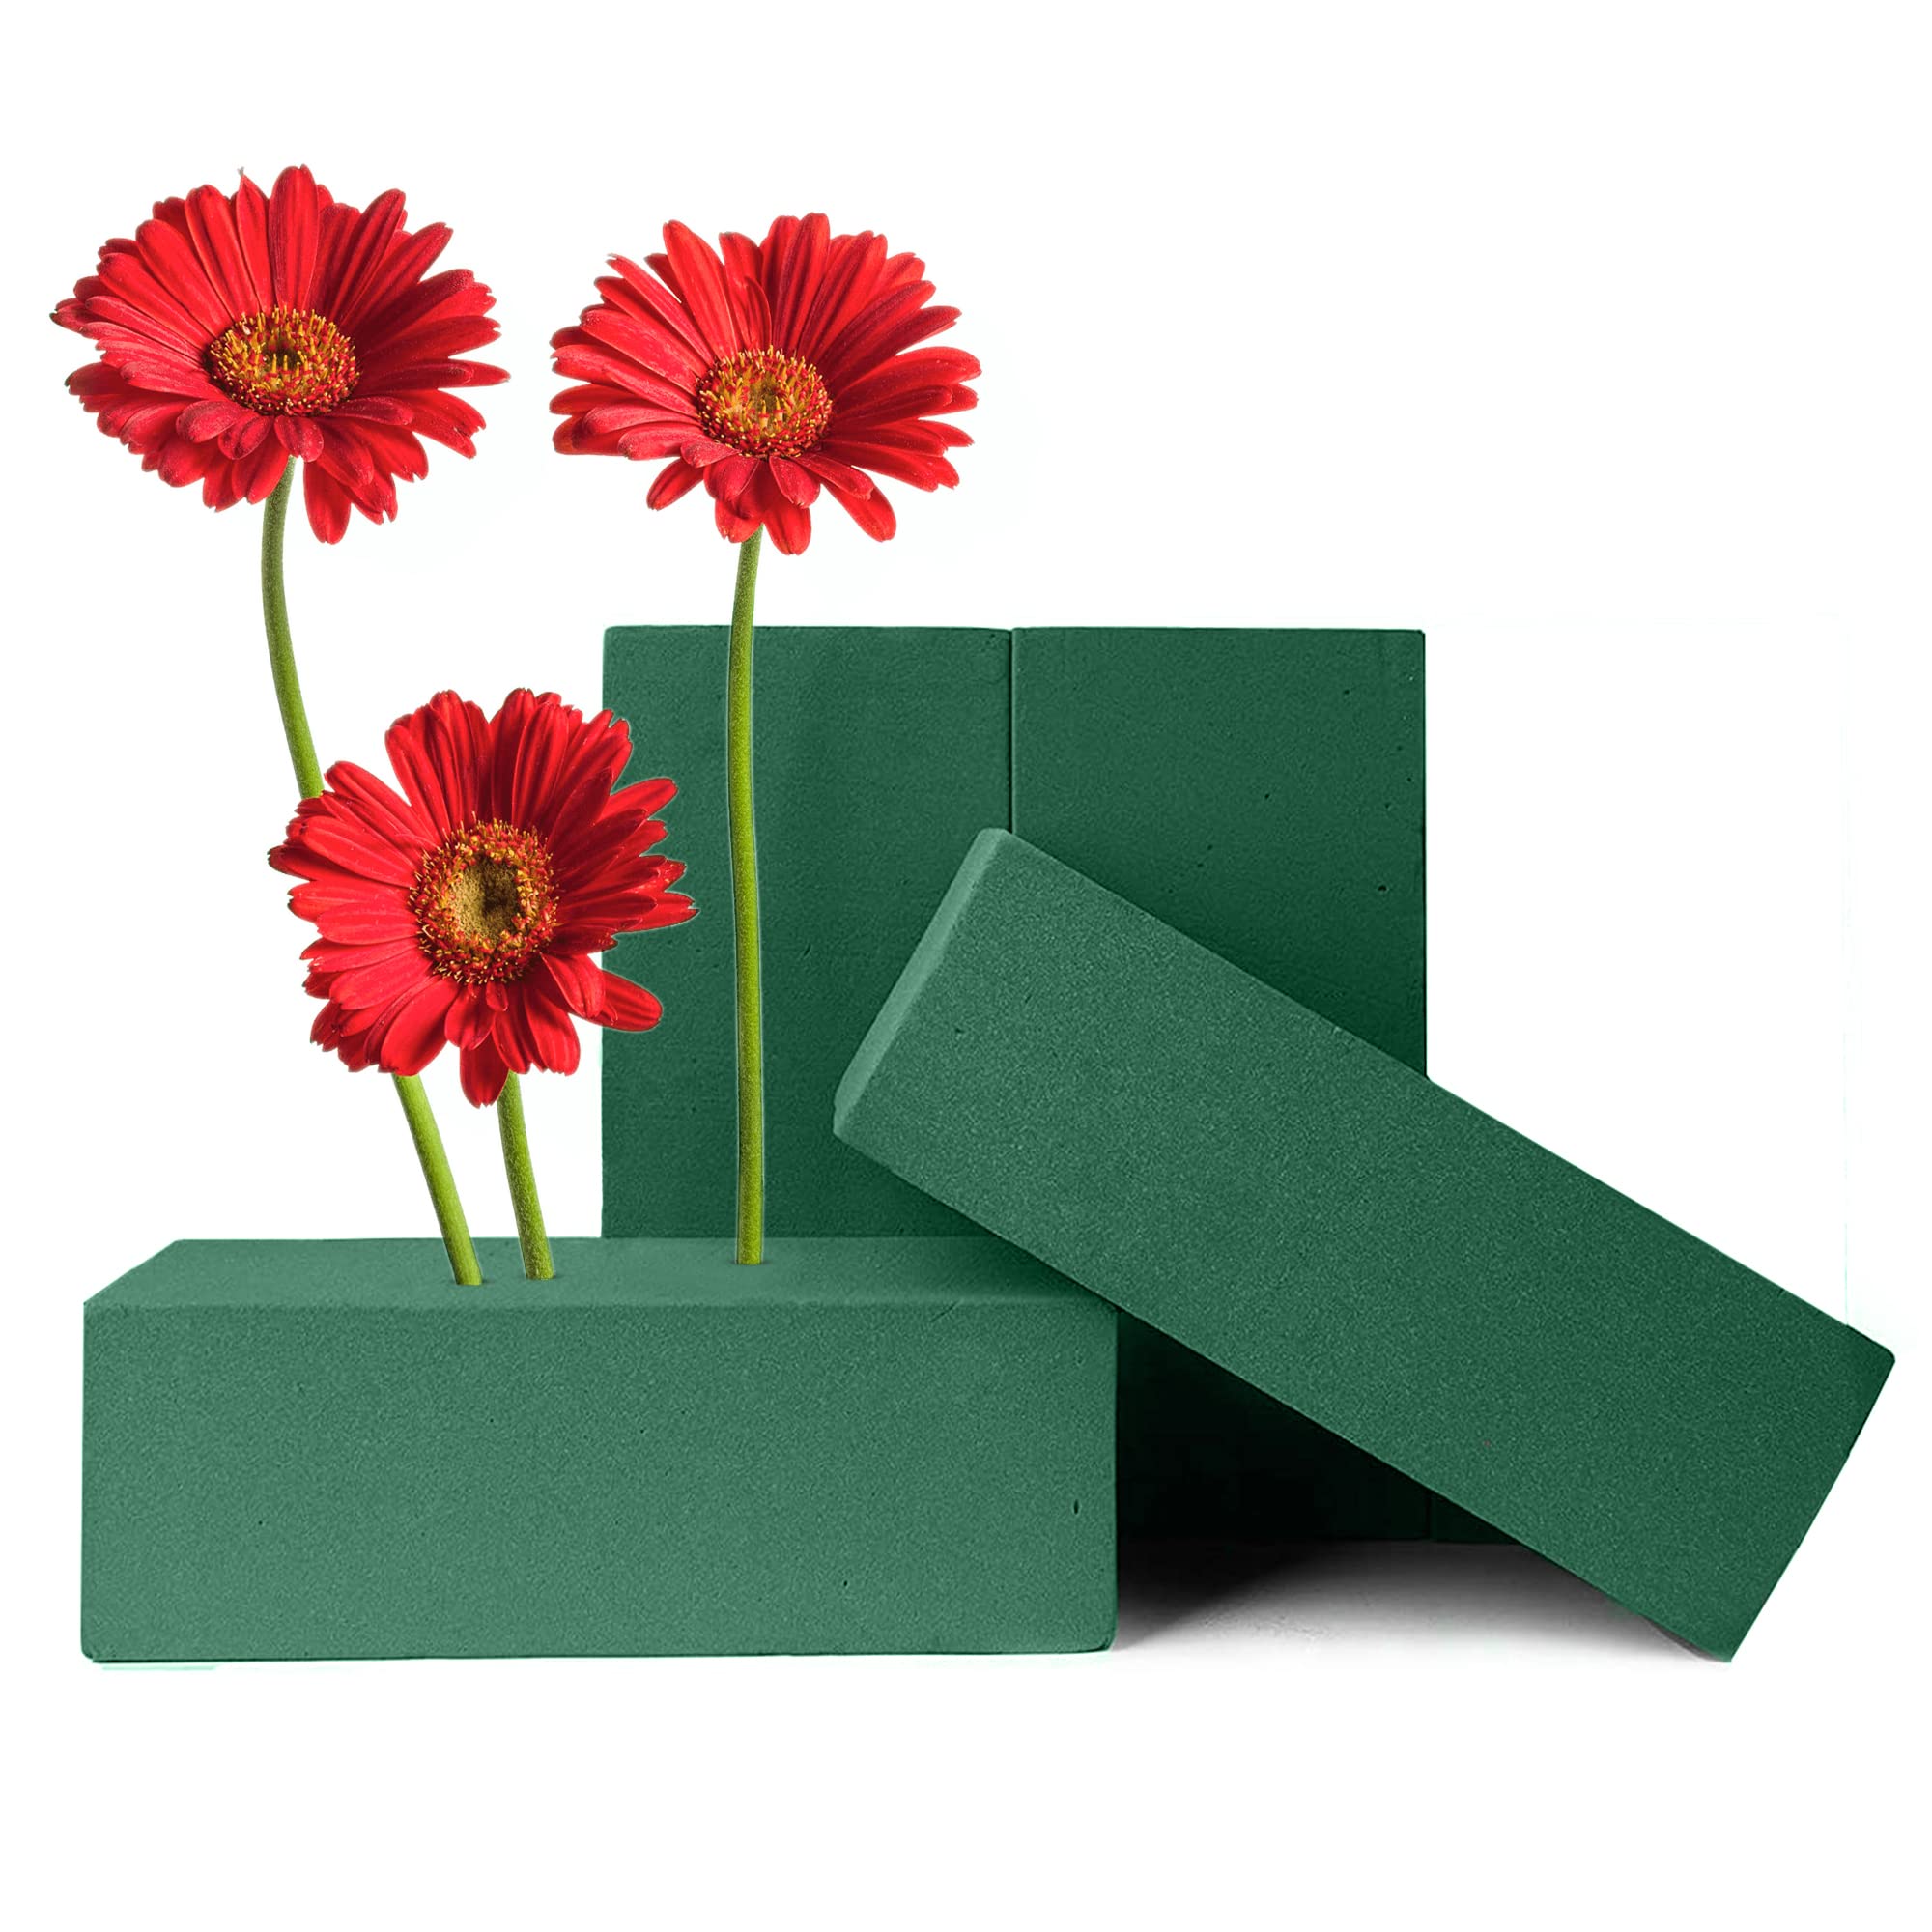 Floral Foam Blocks (4 Bricks) - Wet Florist Foam - Green Foam